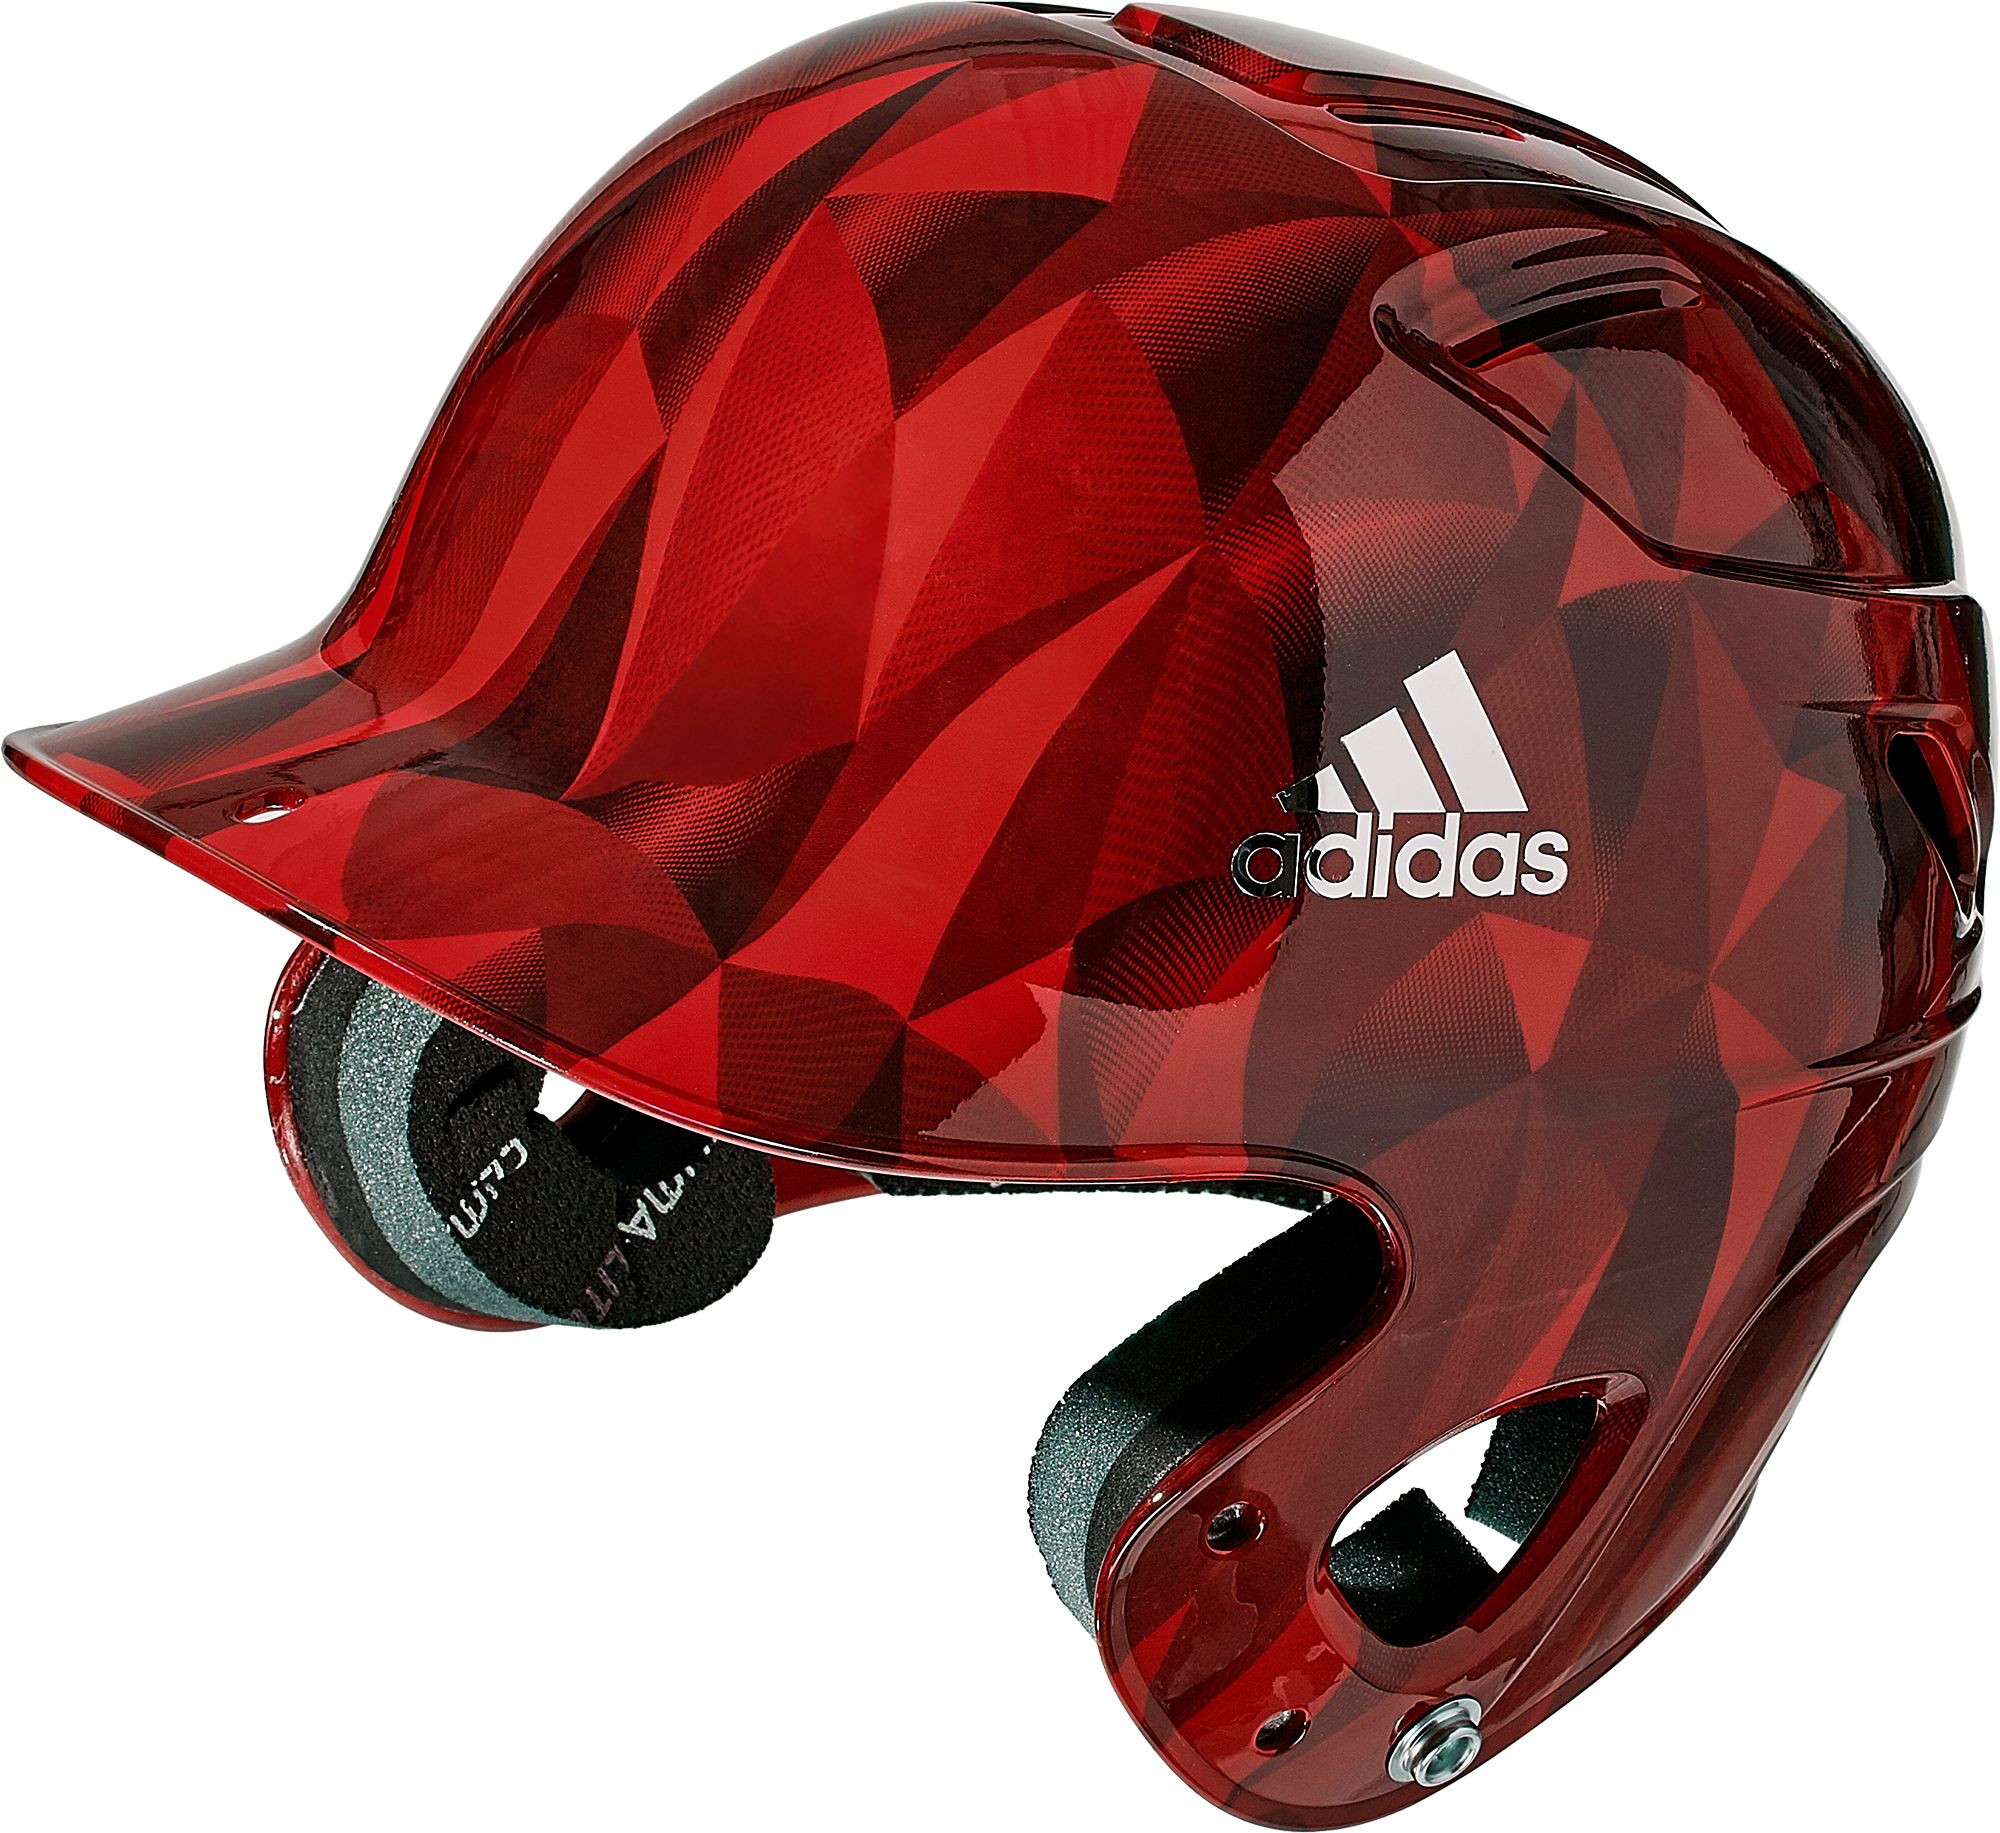 adidas t ball helmet